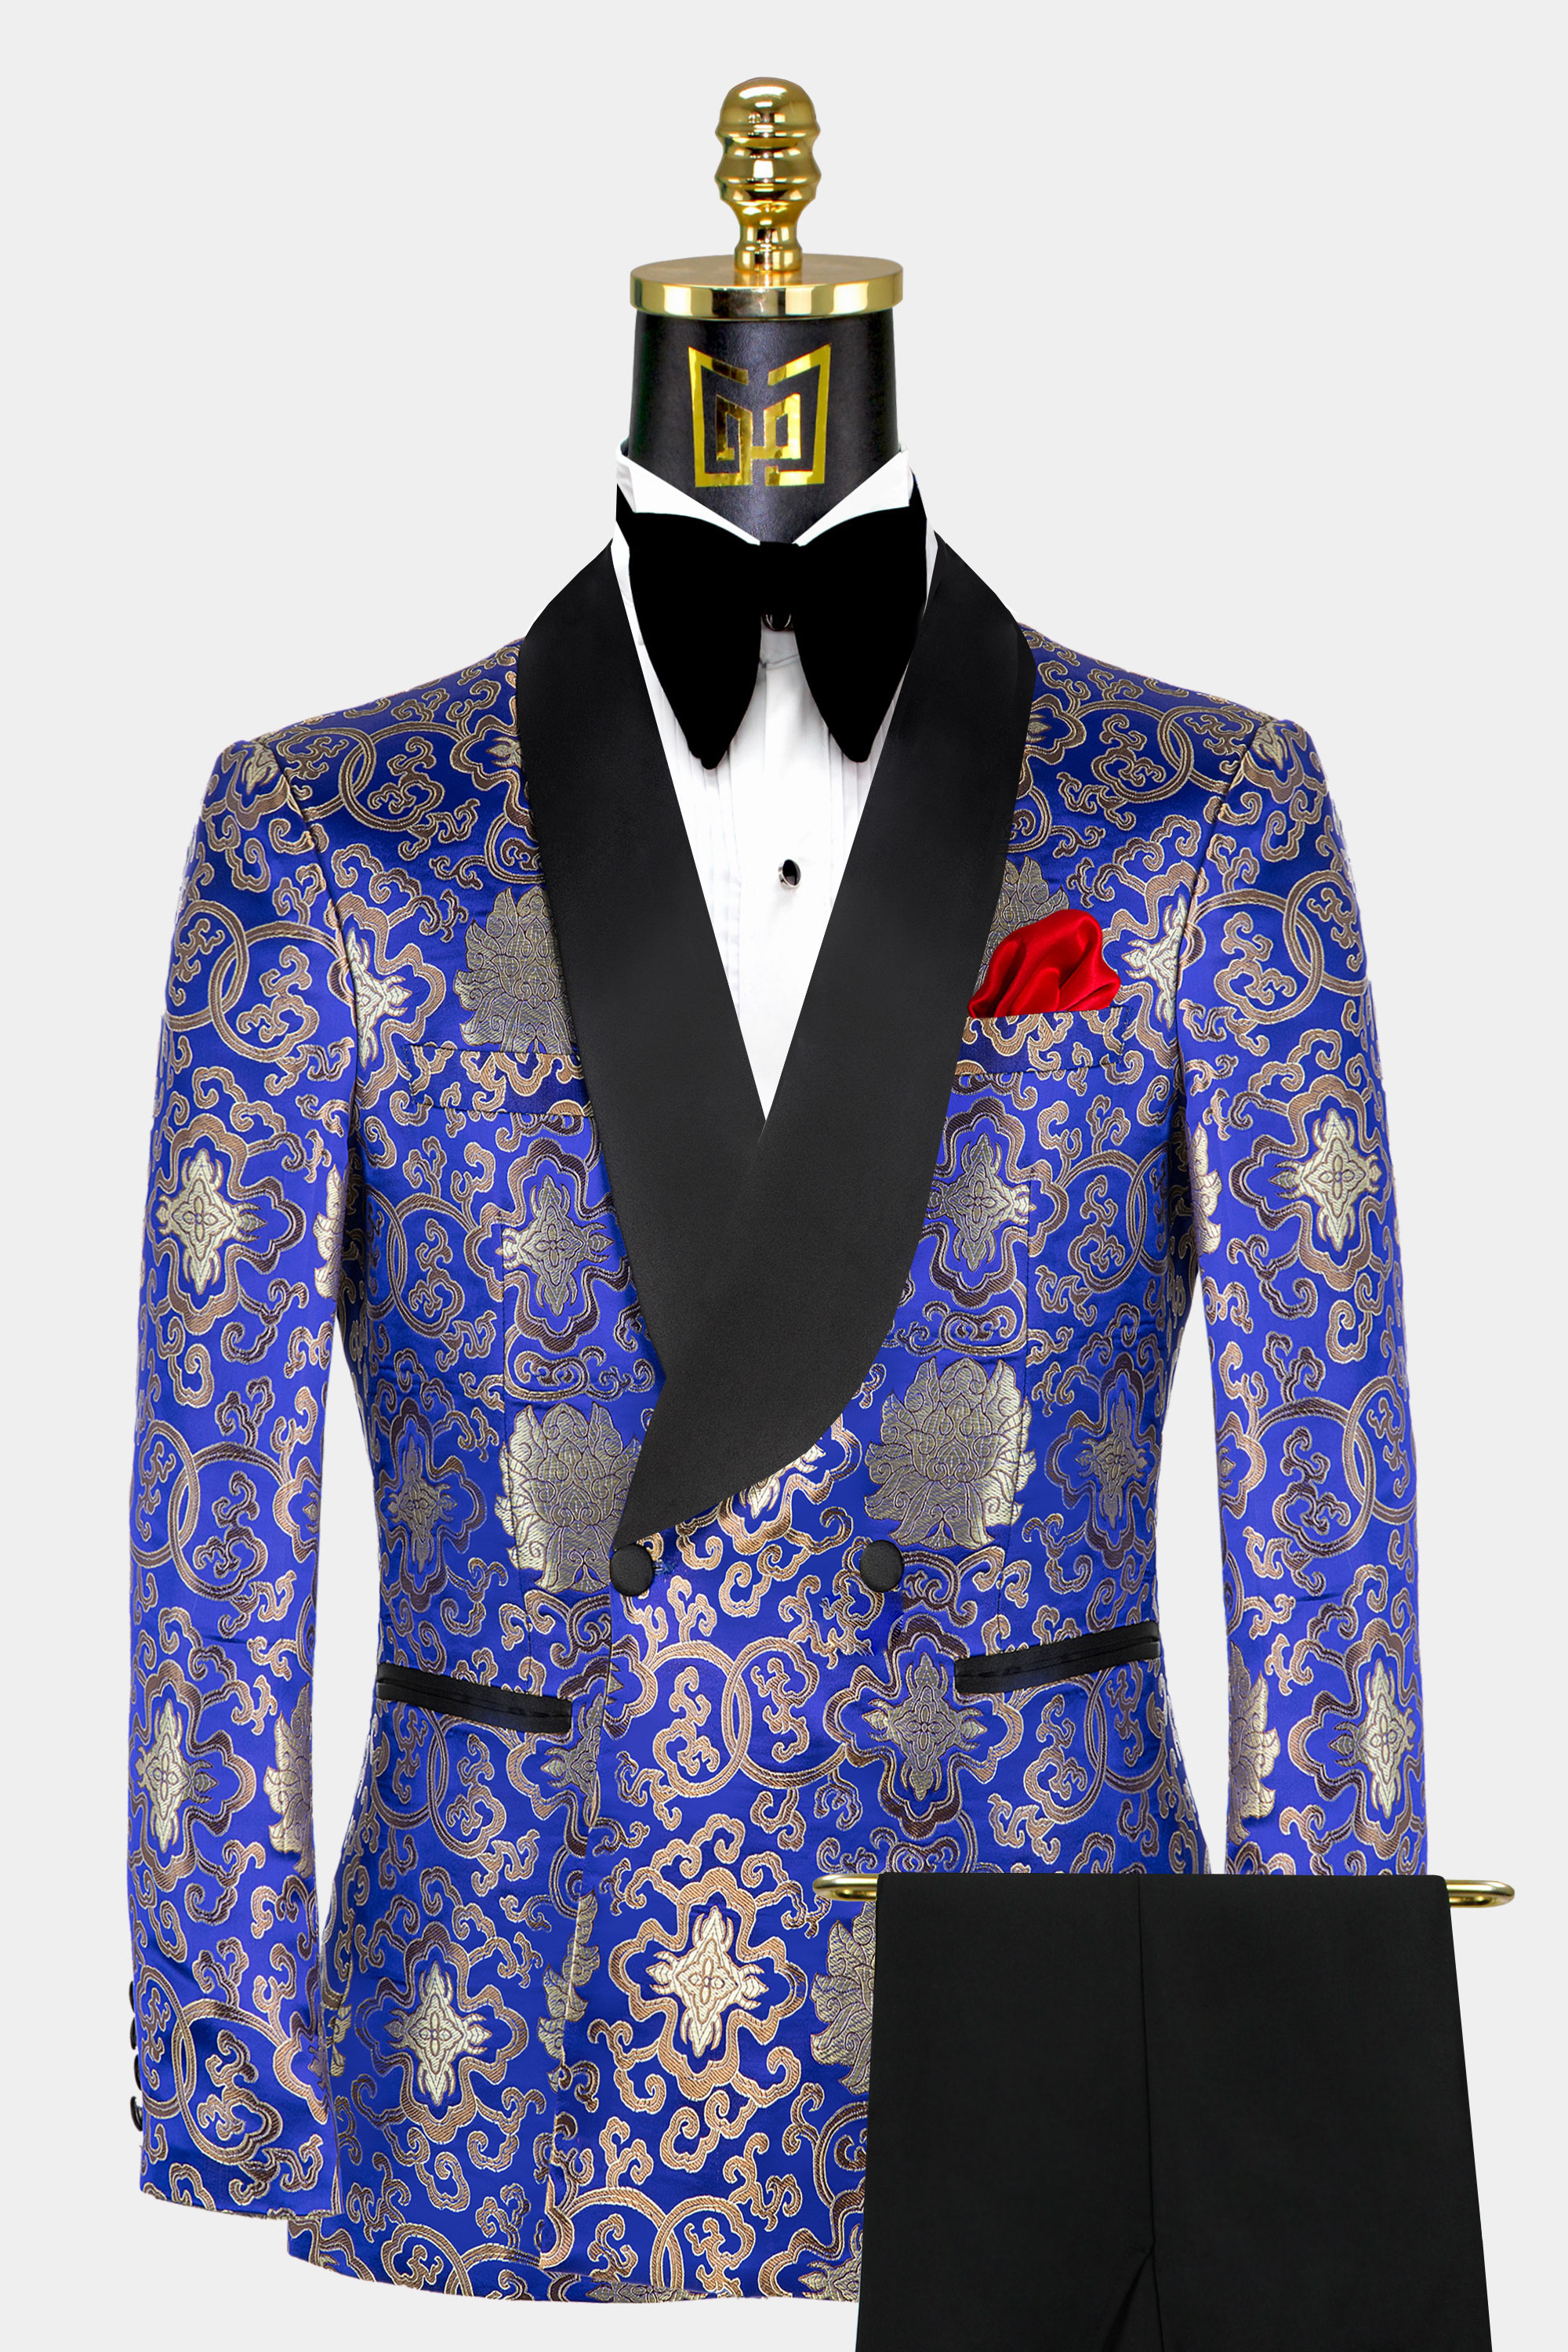 Gold and Blue Tuxedo Suit | Gentleman's Guru